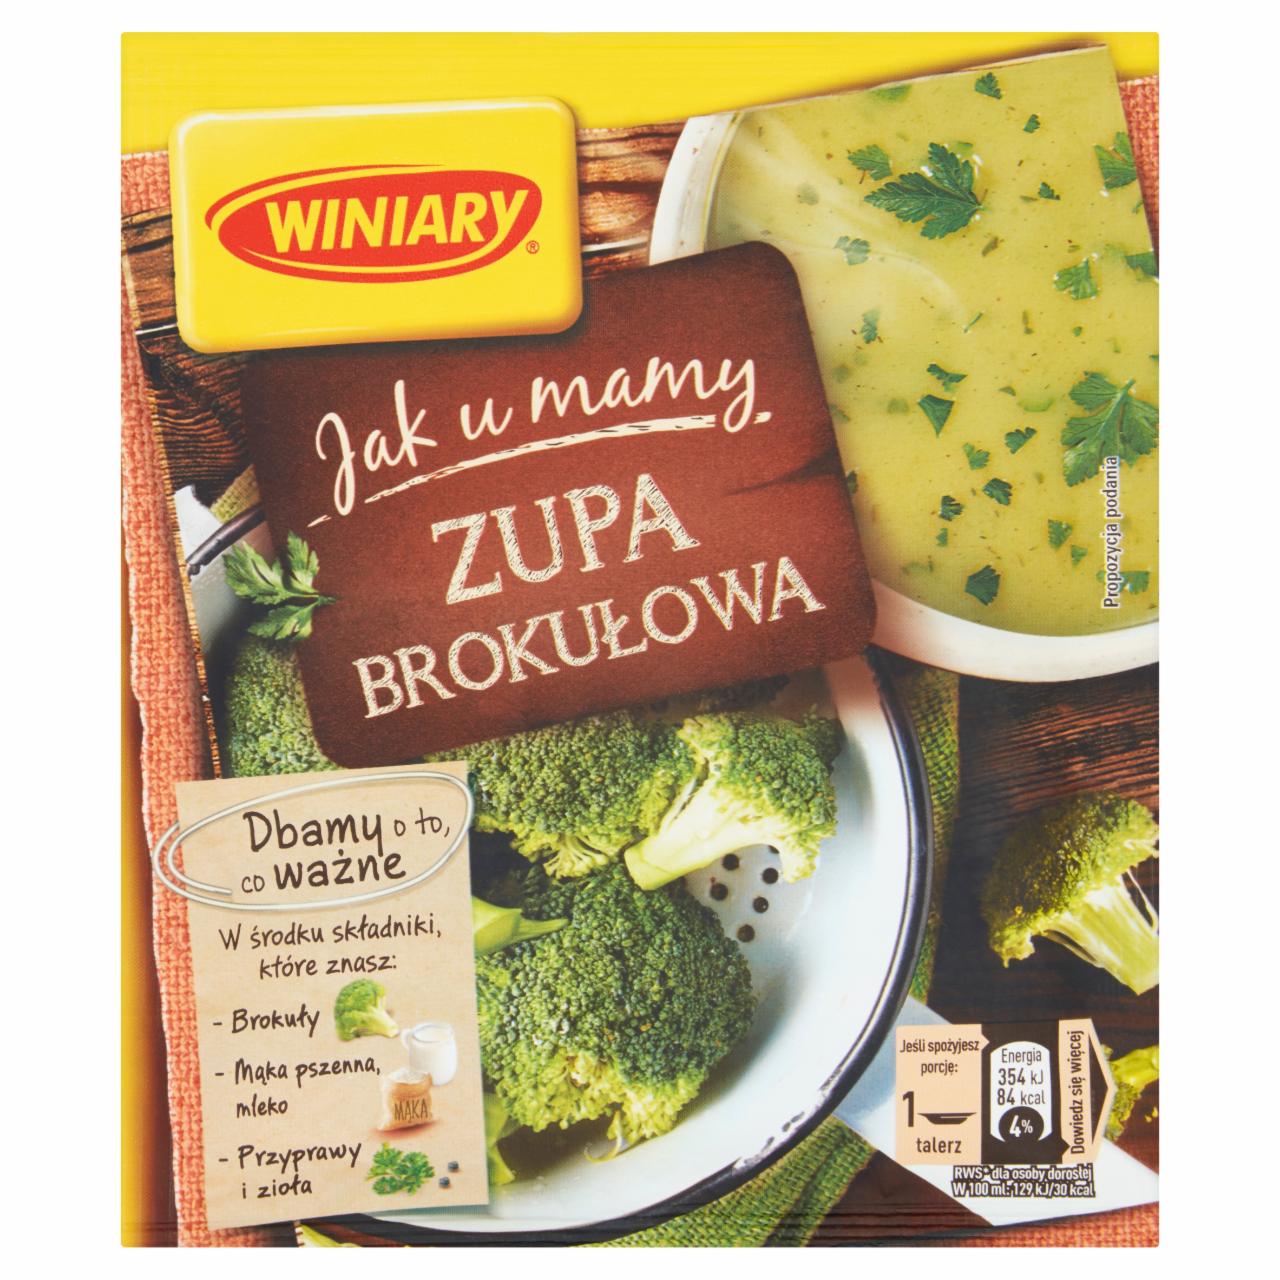 Zdjęcia - Winiary Szlachetne Smaki Zupa brokułowa 49 g